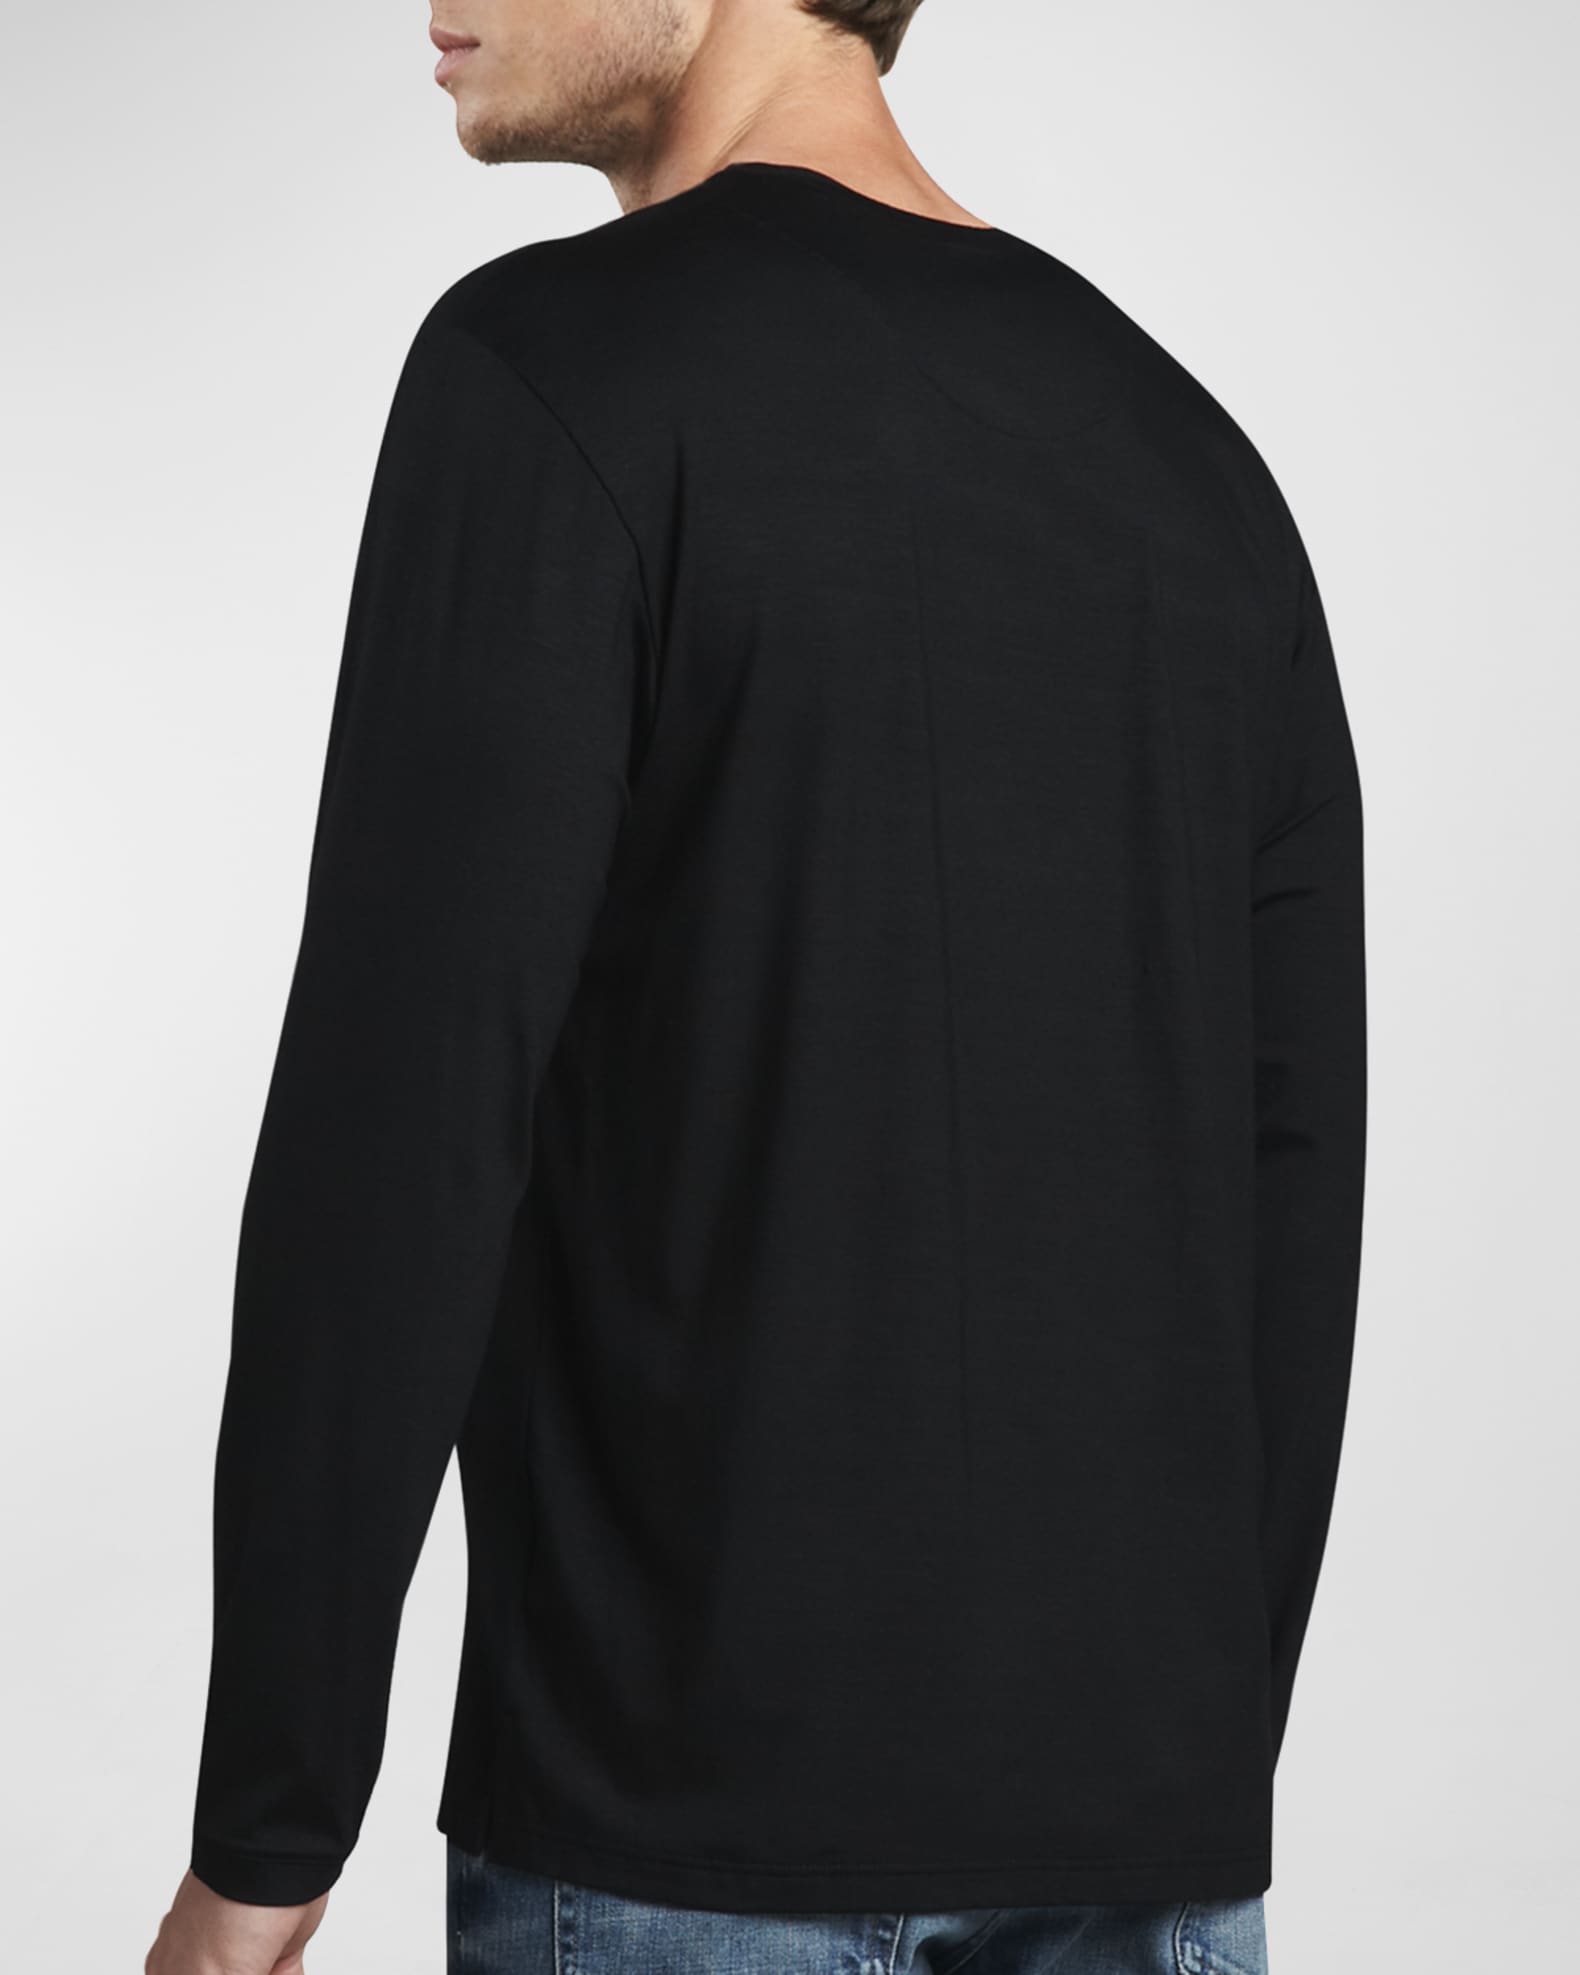 Derek Rose Basel 1 Long-Sleeve Jersey T-Shirt, Black | Neiman Marcus